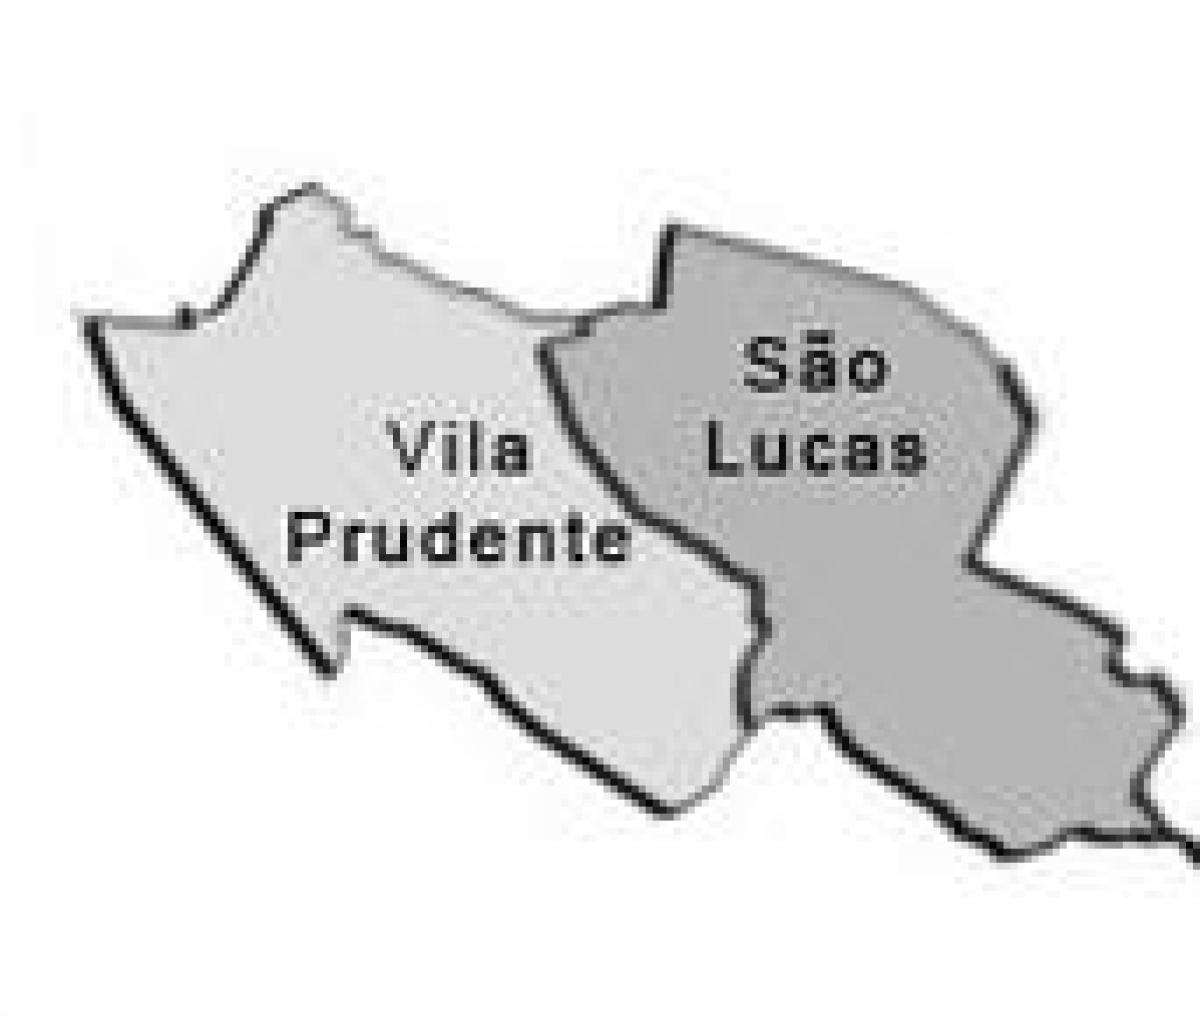 નકશો Vila Prudente પેટા-પ્રીફેકચર